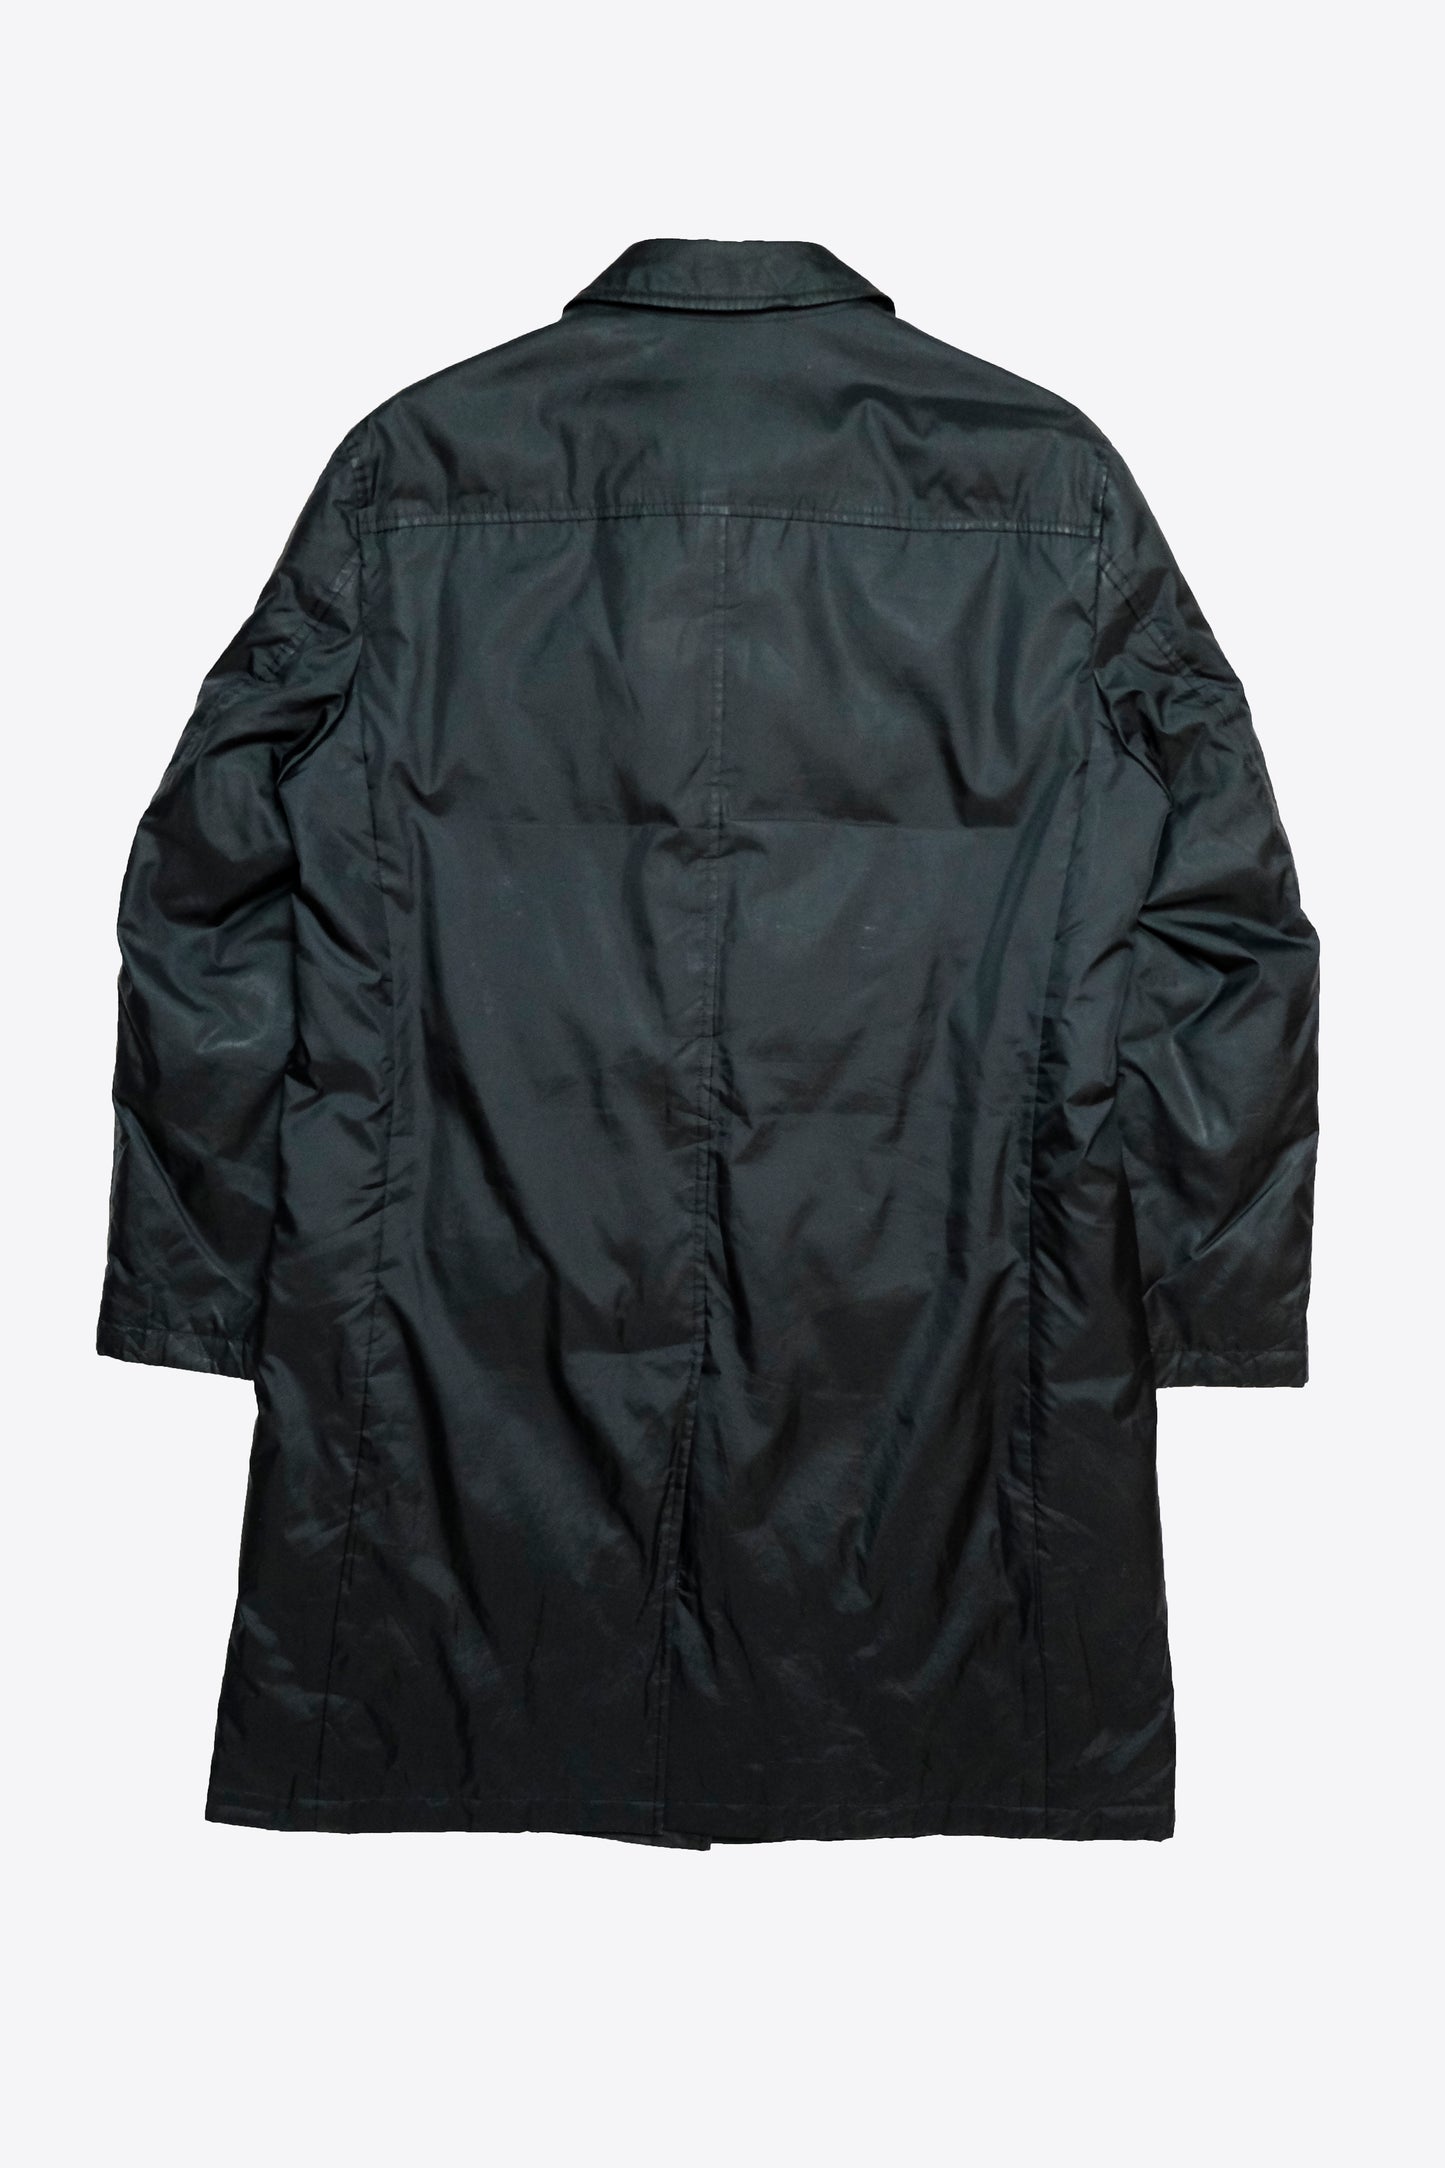 Burberry - Black Label Nova Check Long Coat, Size L – Archaic Archive